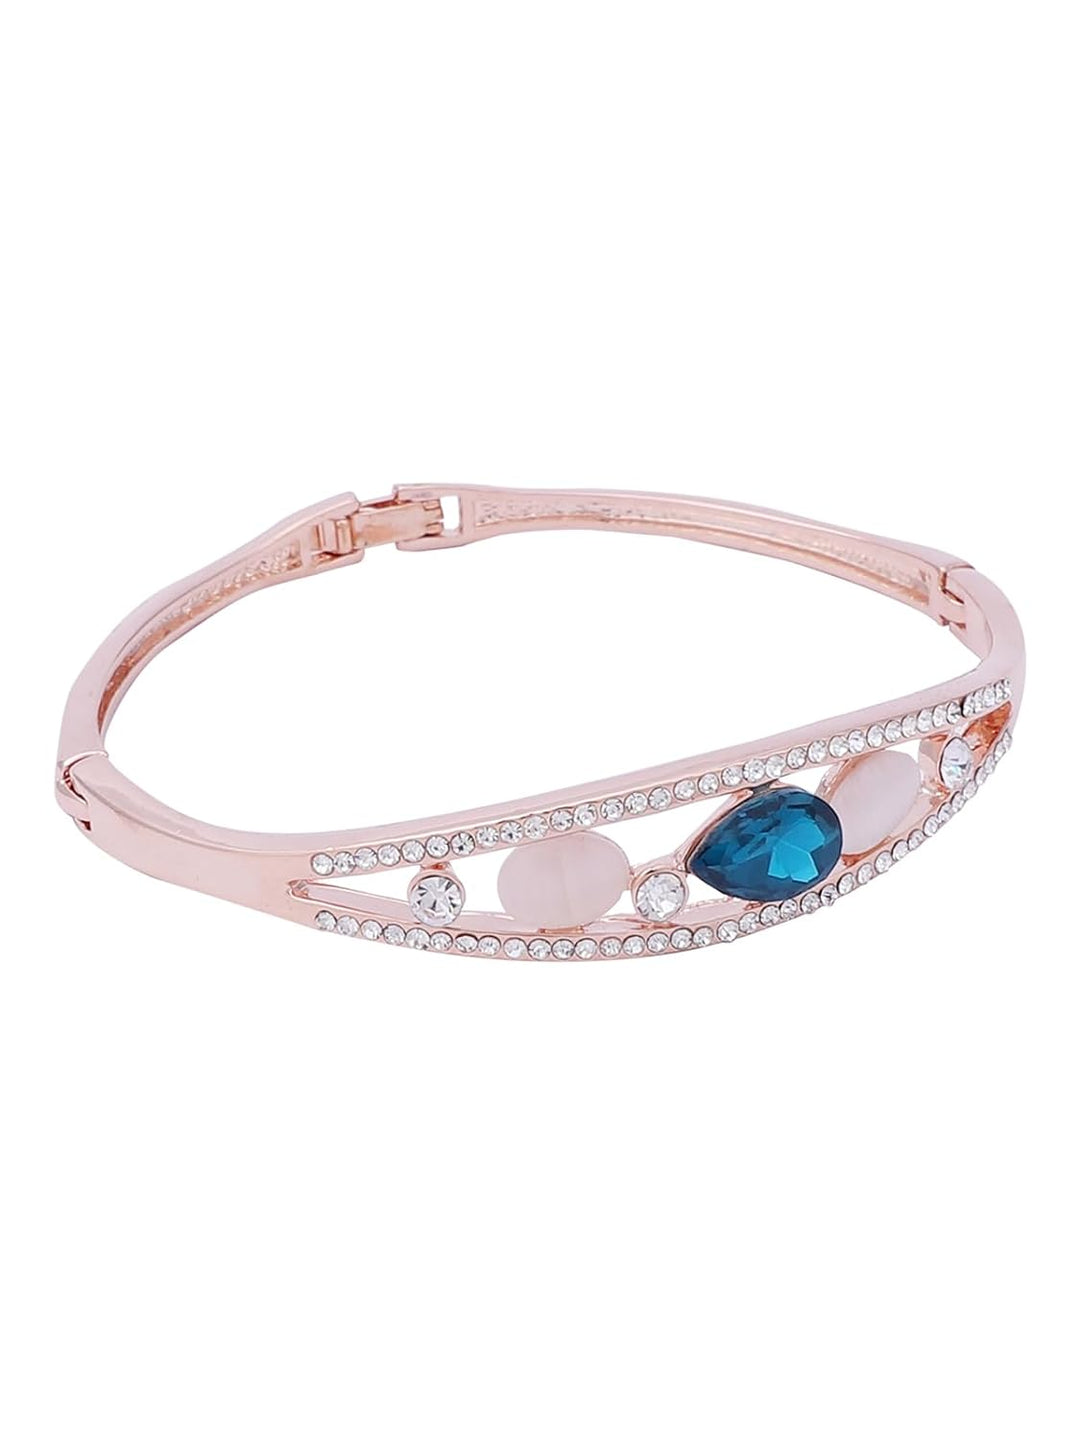 Crystal Studded Bracelet for Women and Girls | Rose Gold Plated Blue Crystal Studded Bracelet for Women/Girls